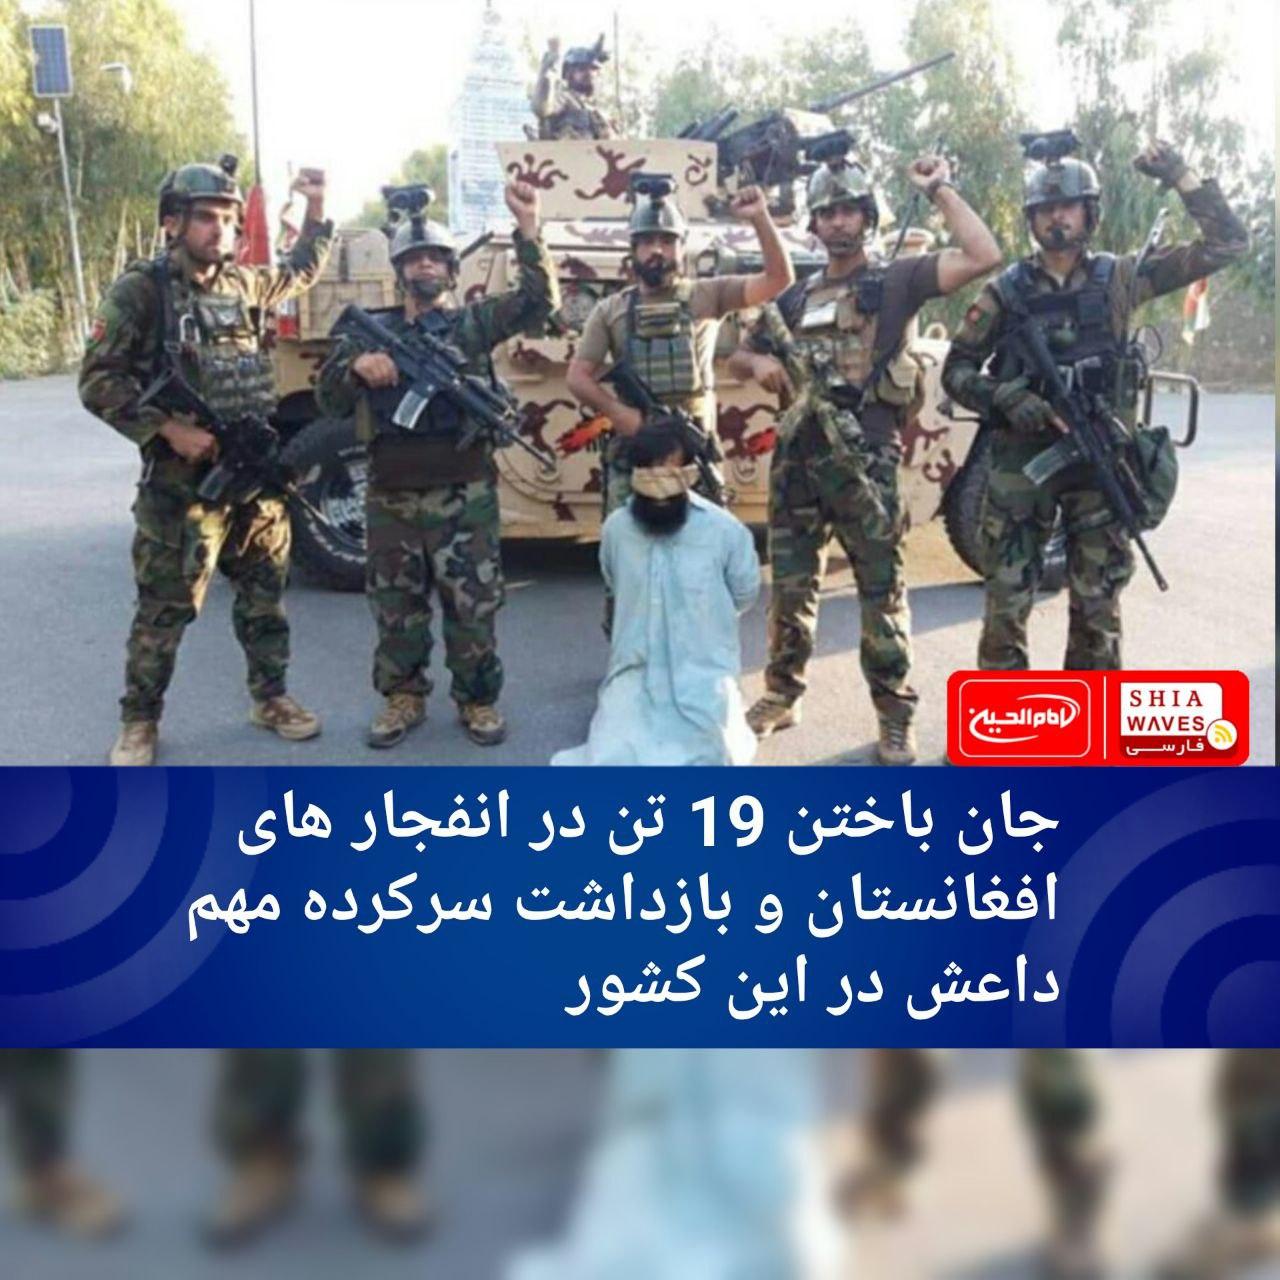 تصویر جان باختن 19 تن در انفجار های افغانستان و بازداشت سرکرده مهم  داعش در این کشور